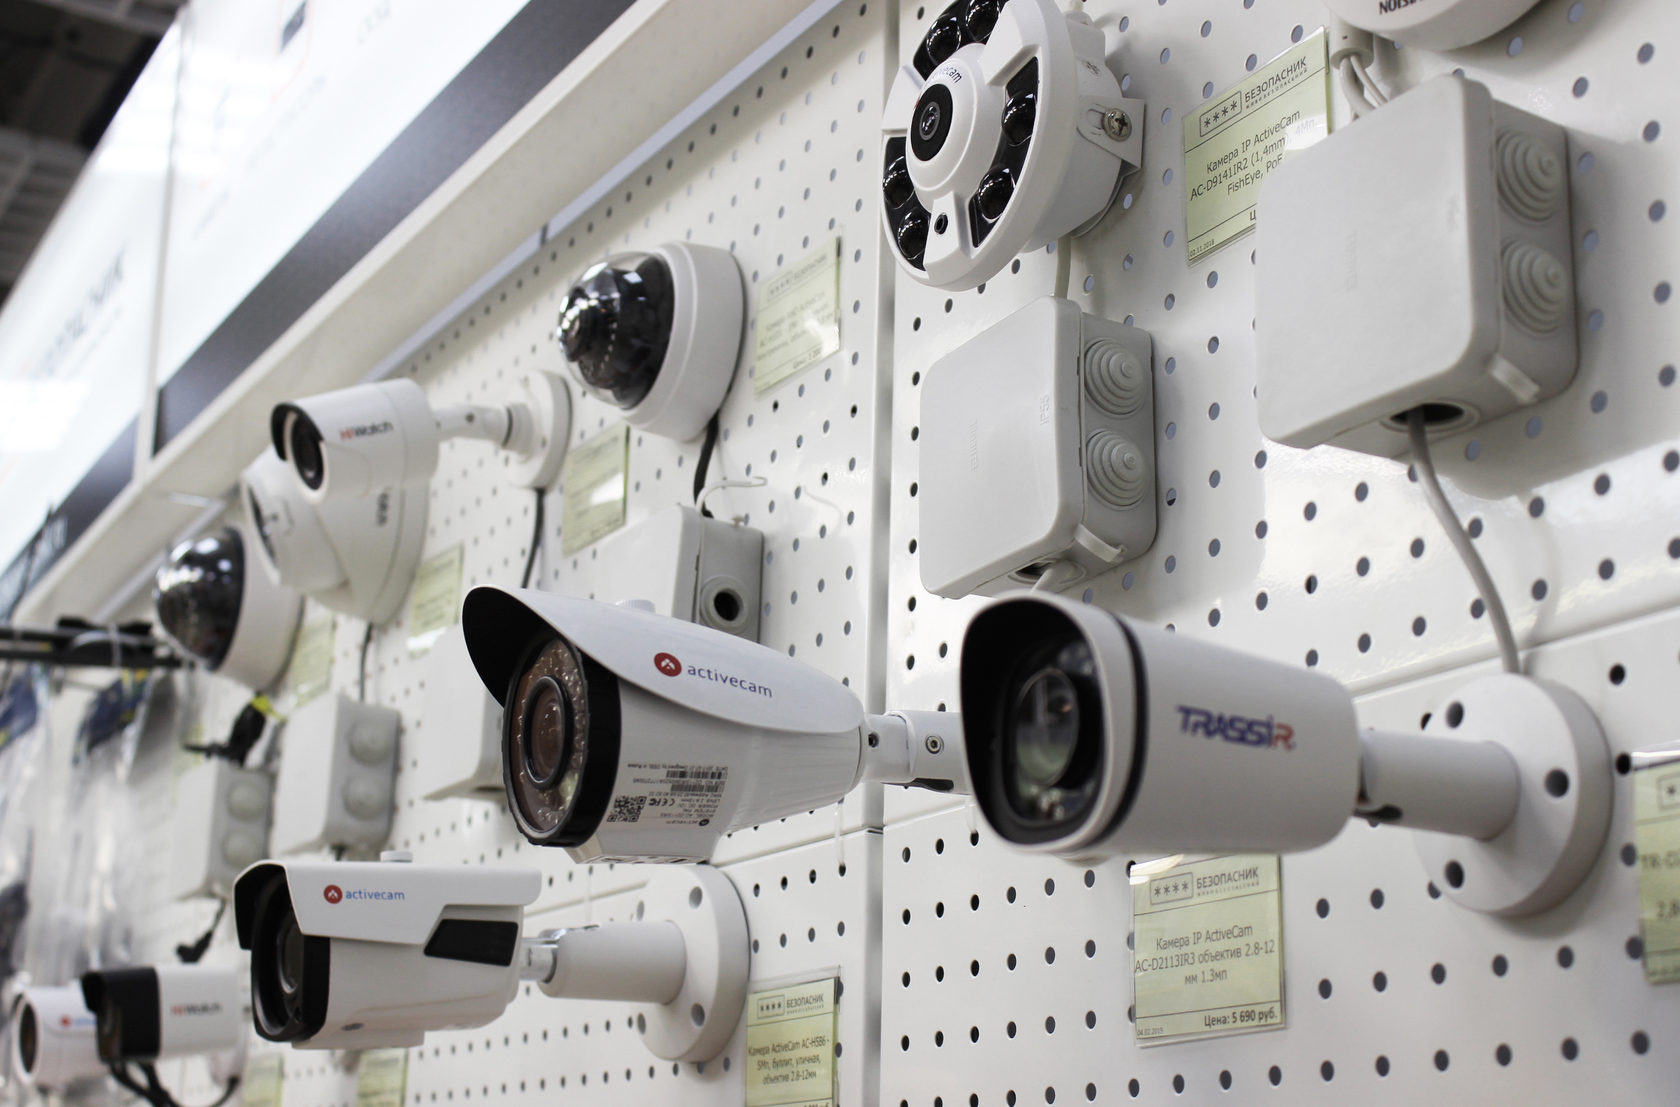 Купить камеру ижевск. Видеонаблюдение. Система видеонаблюдения. Системы безопасности и видеонаблюдения. Видеонаблюдение в магазине.